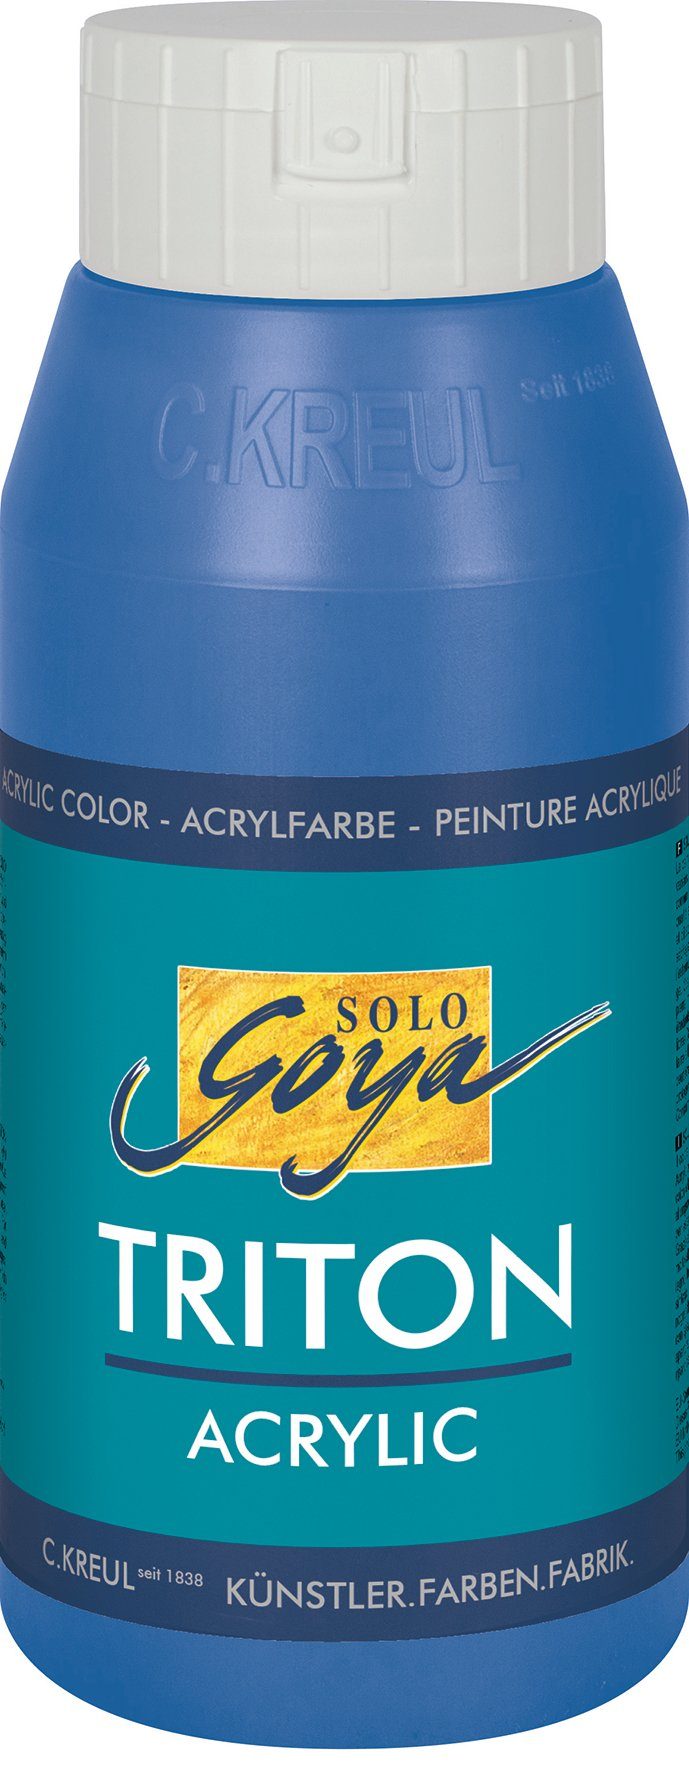 Coelinblau Acrylfarbe Solo Kreul 750 Goya Acrylic, Triton ml